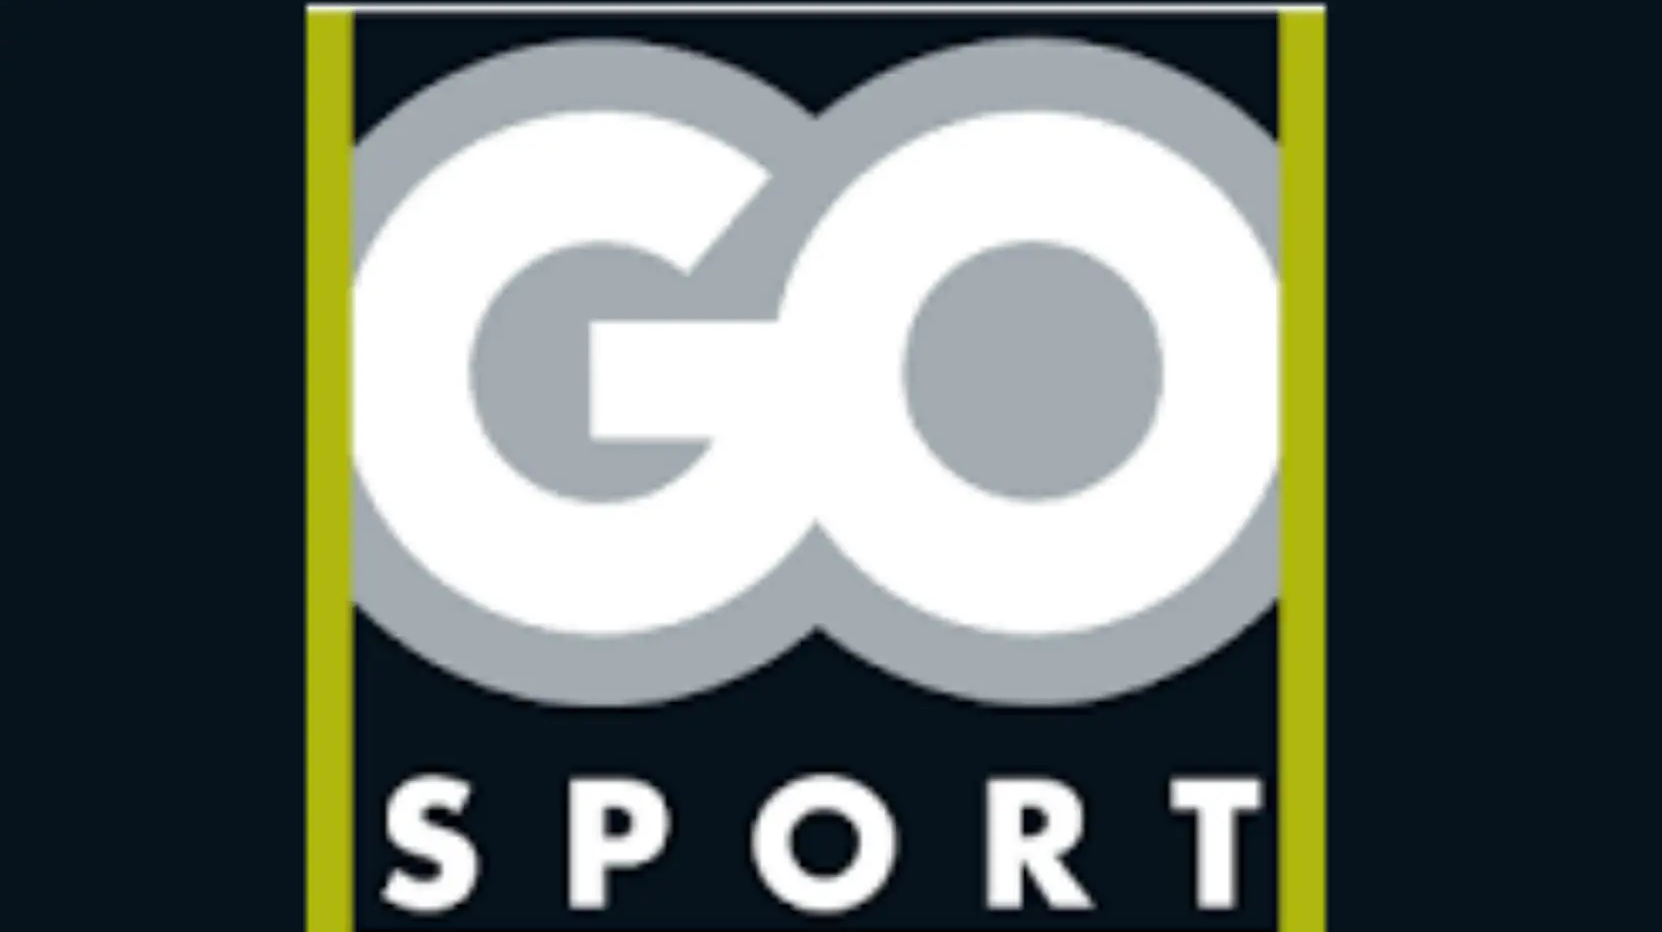 Go Sport : audience le 19 décembre à Grenoble sur la situation financière